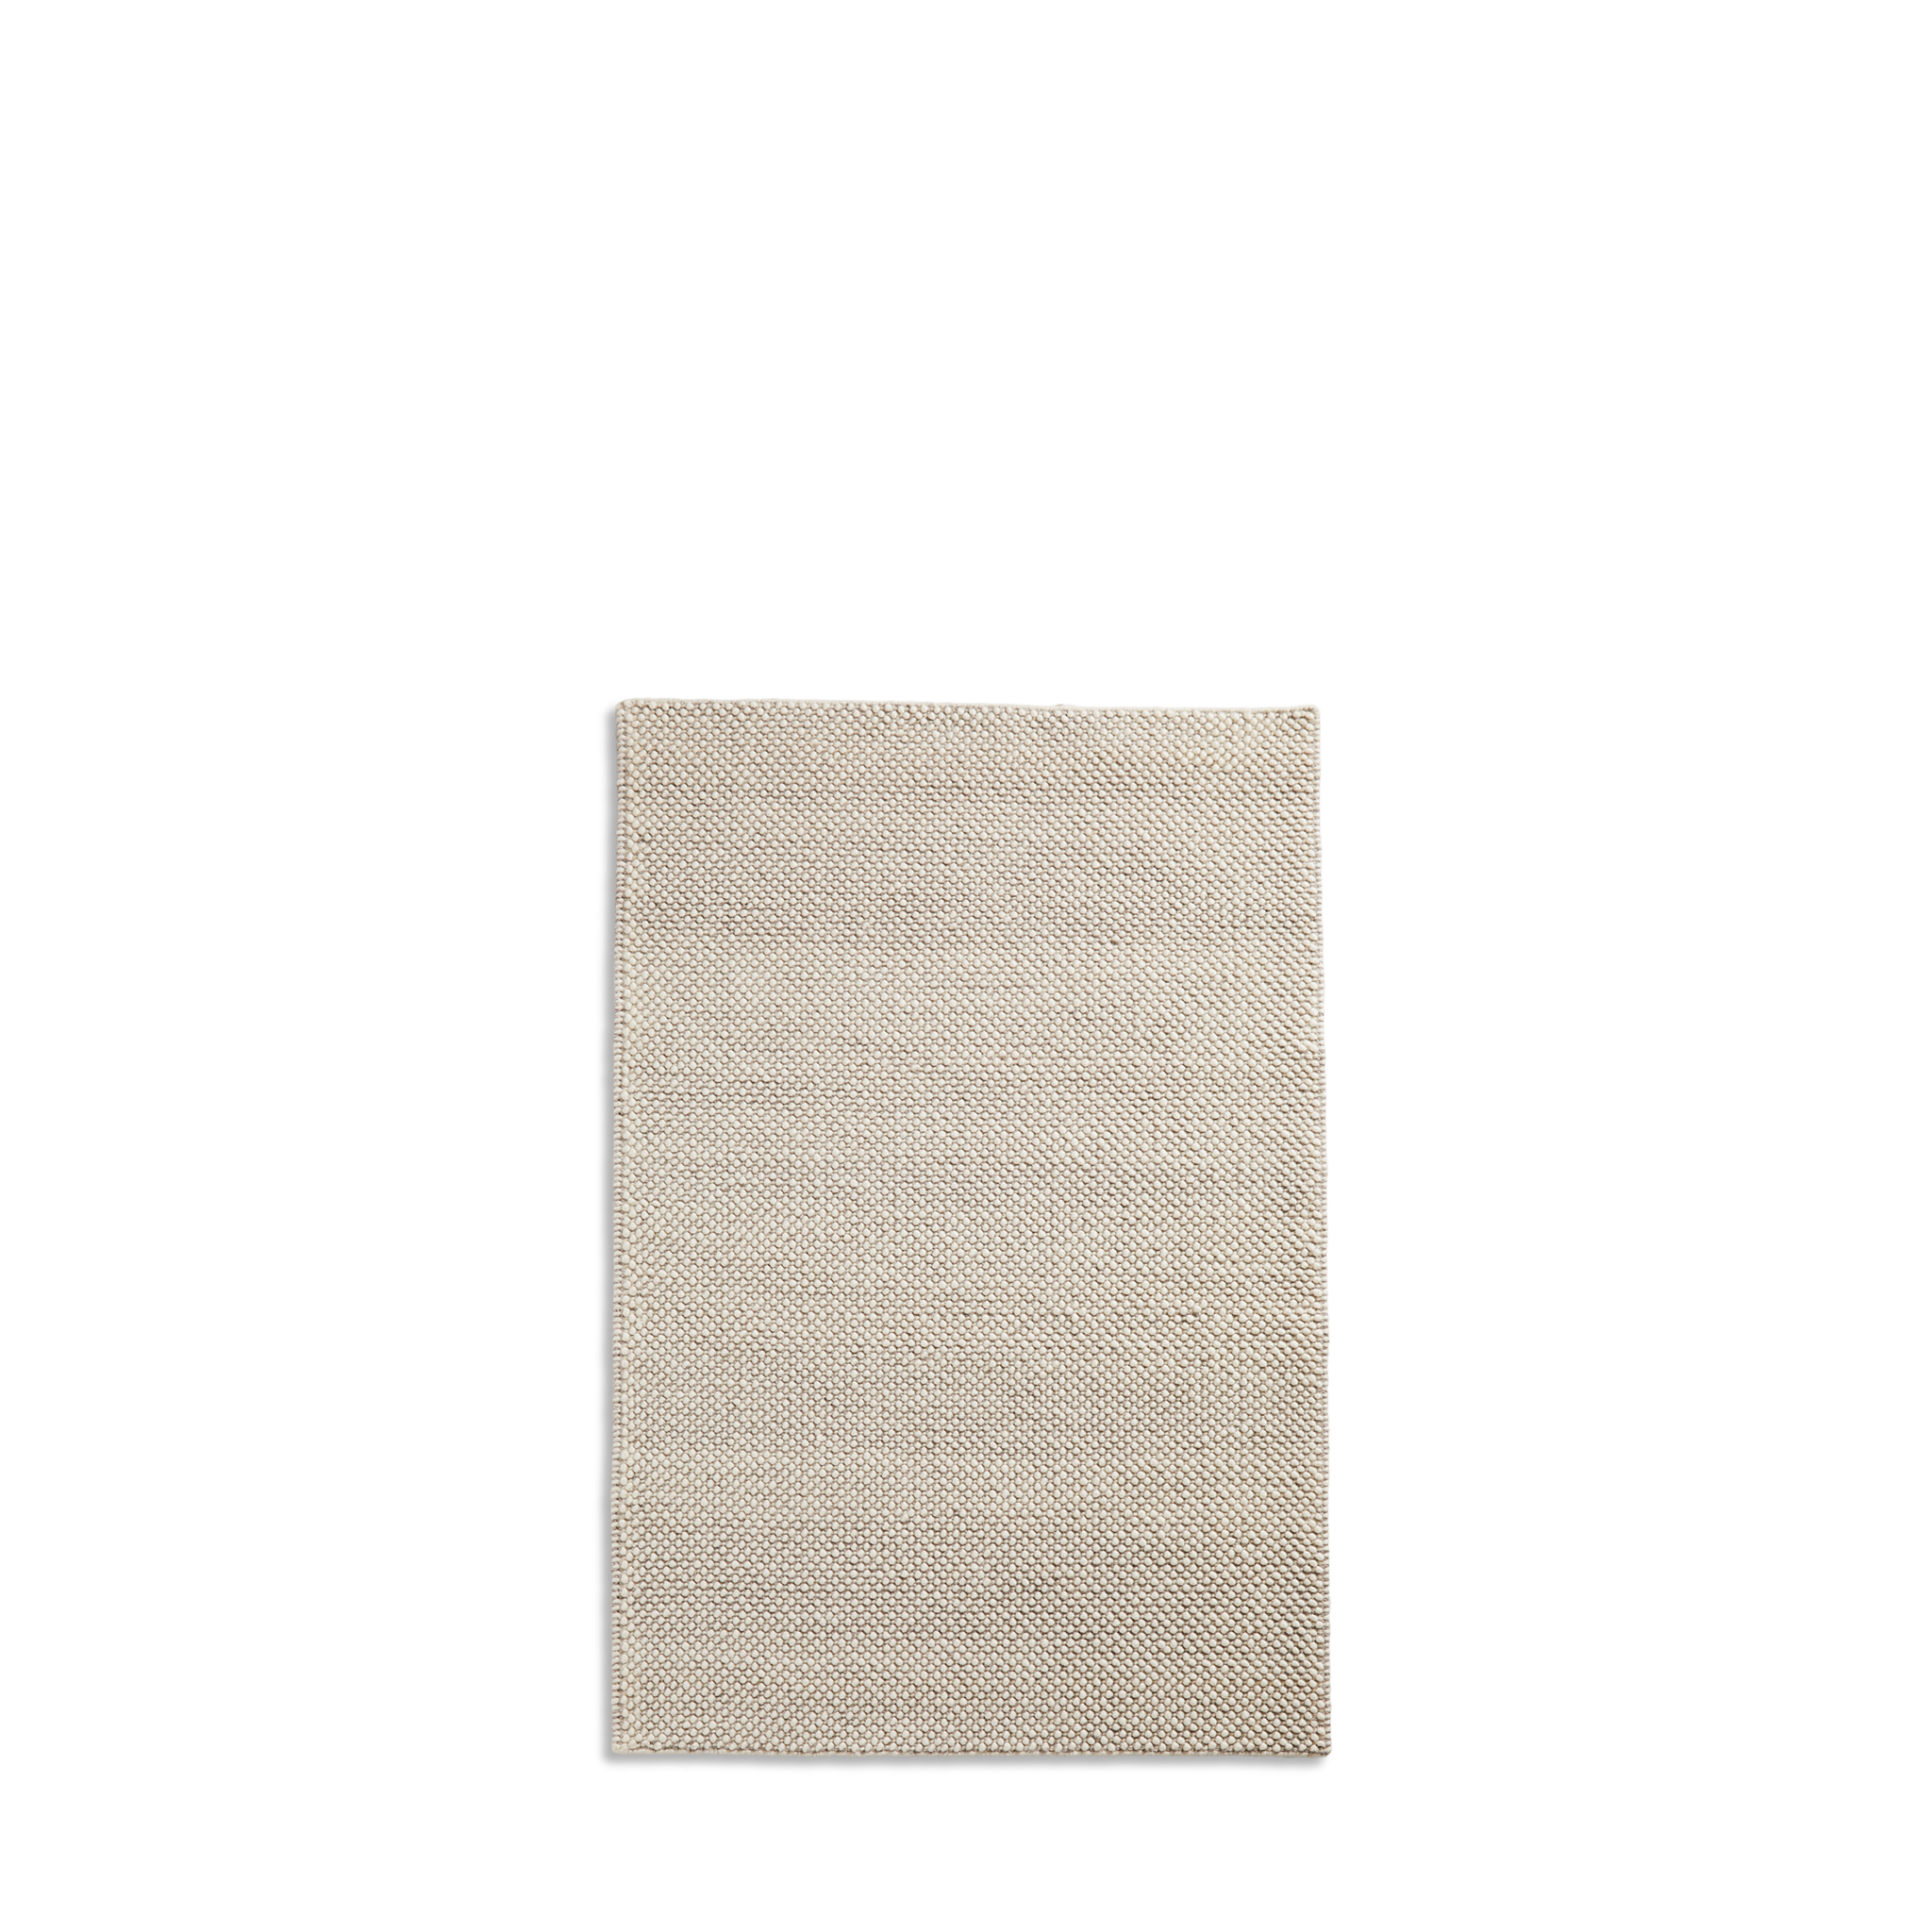 Woud - Taktteppich (90 x 140) - aus weiß